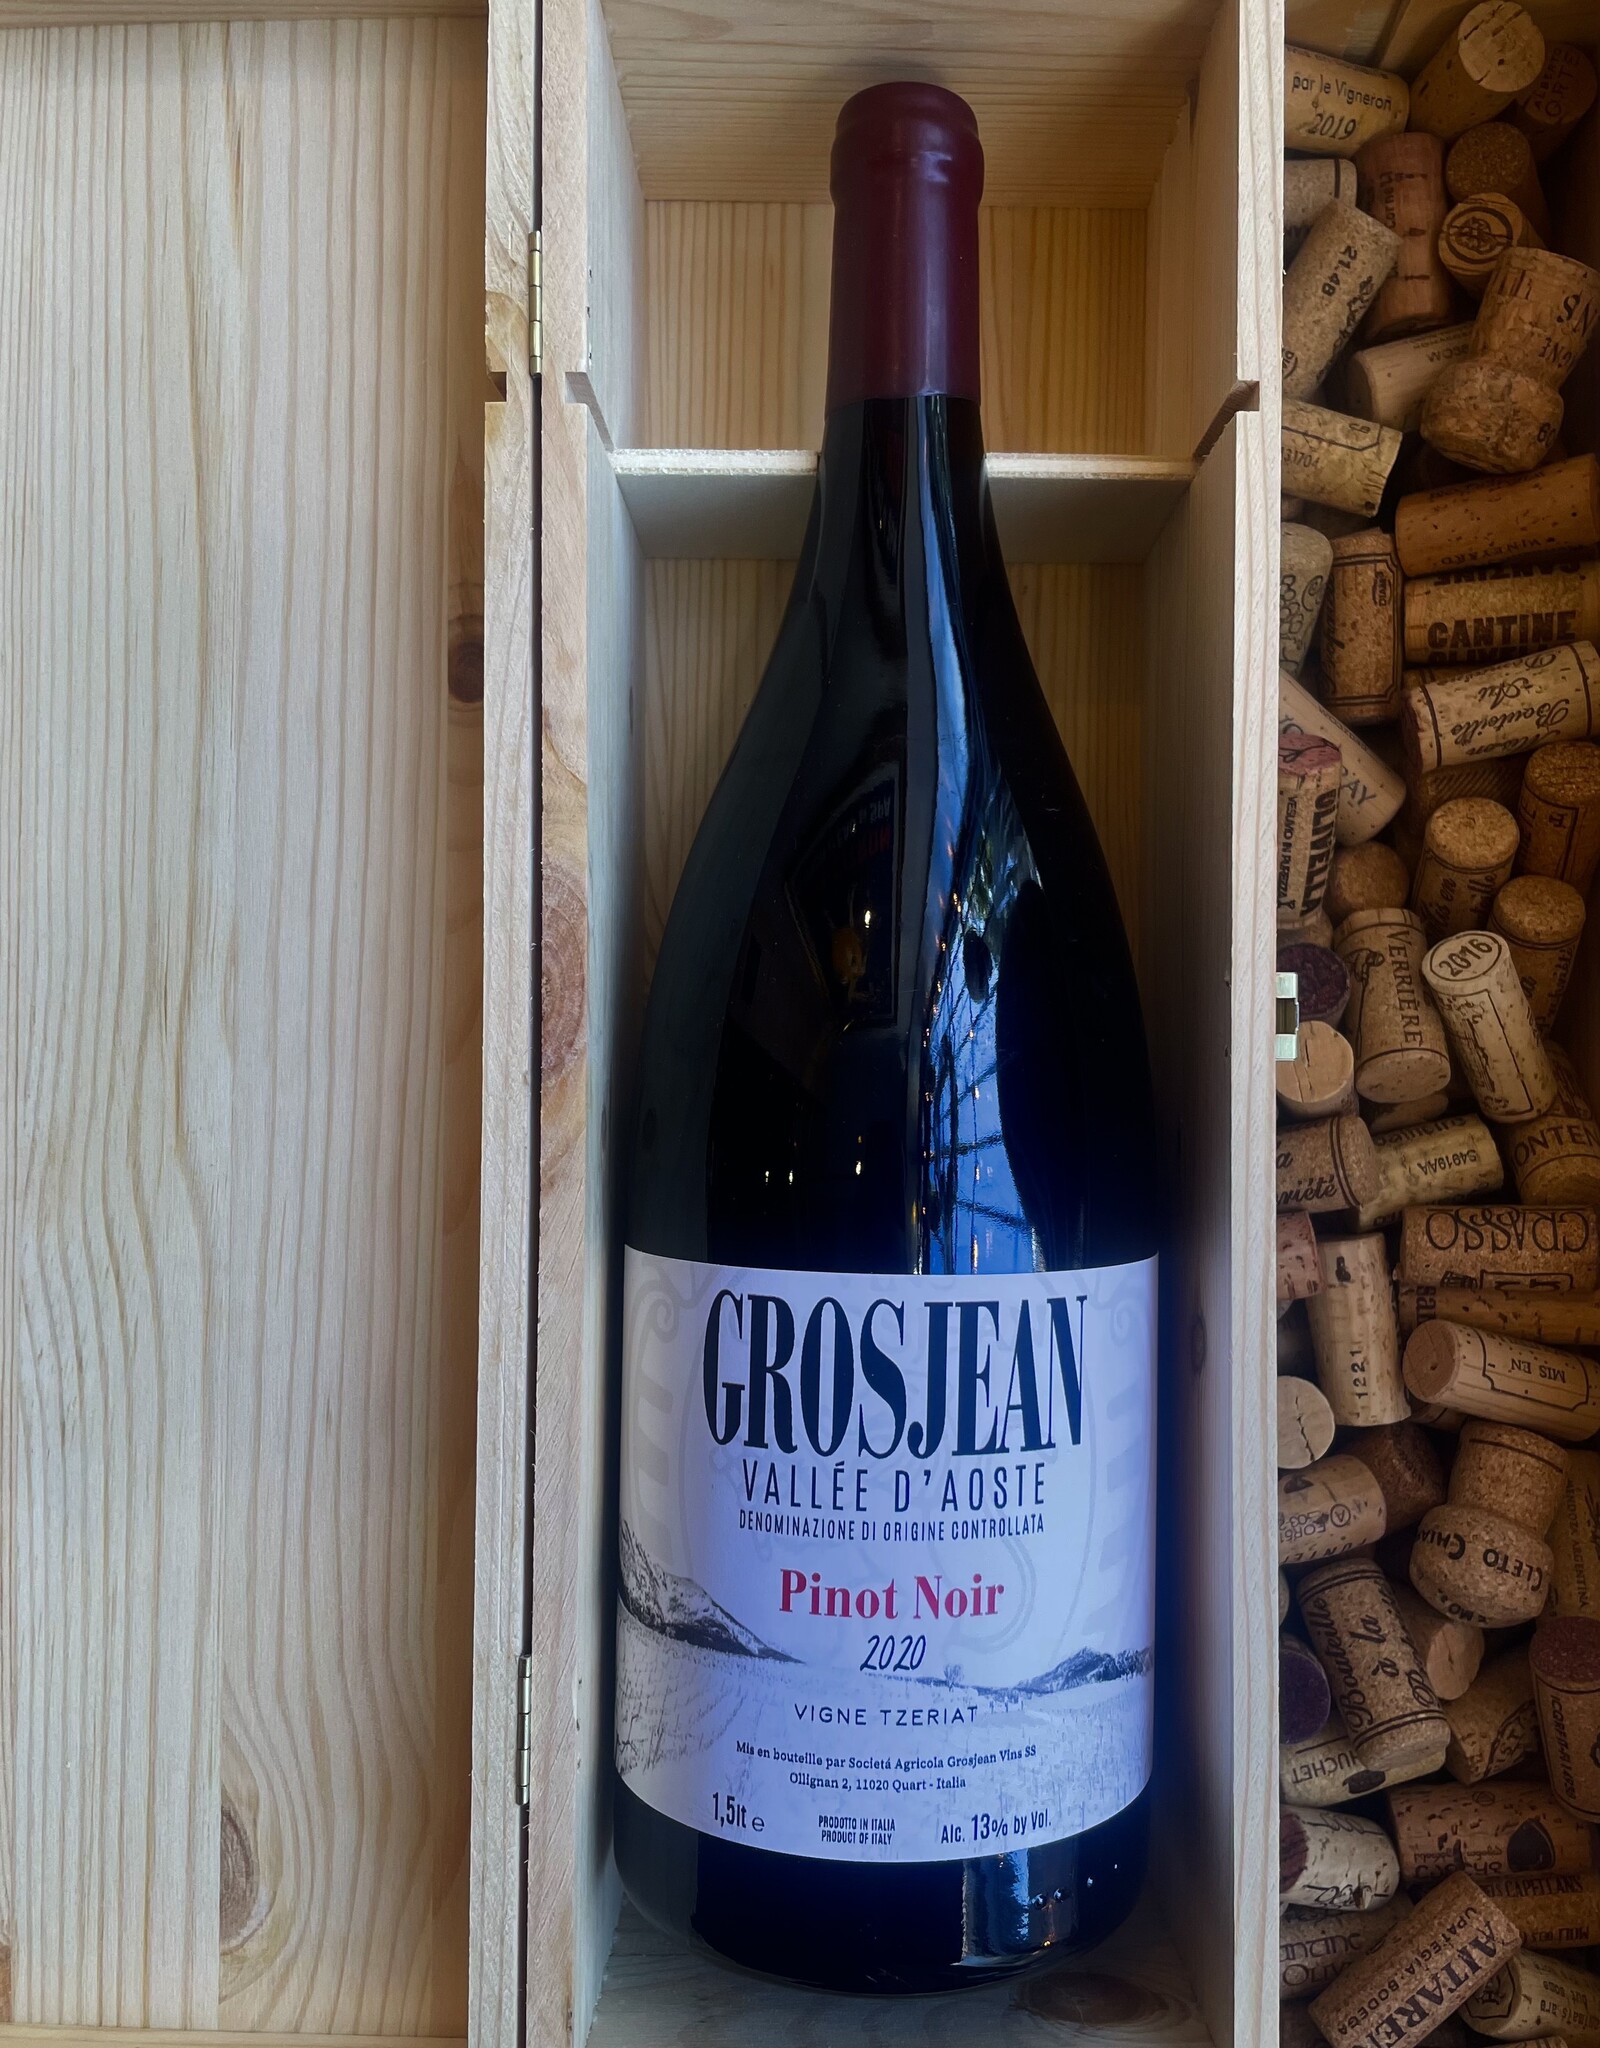 Grosjean Pinot Noir "Vigne Tzeriat" Vallée d'Aoste 2020 1500ml